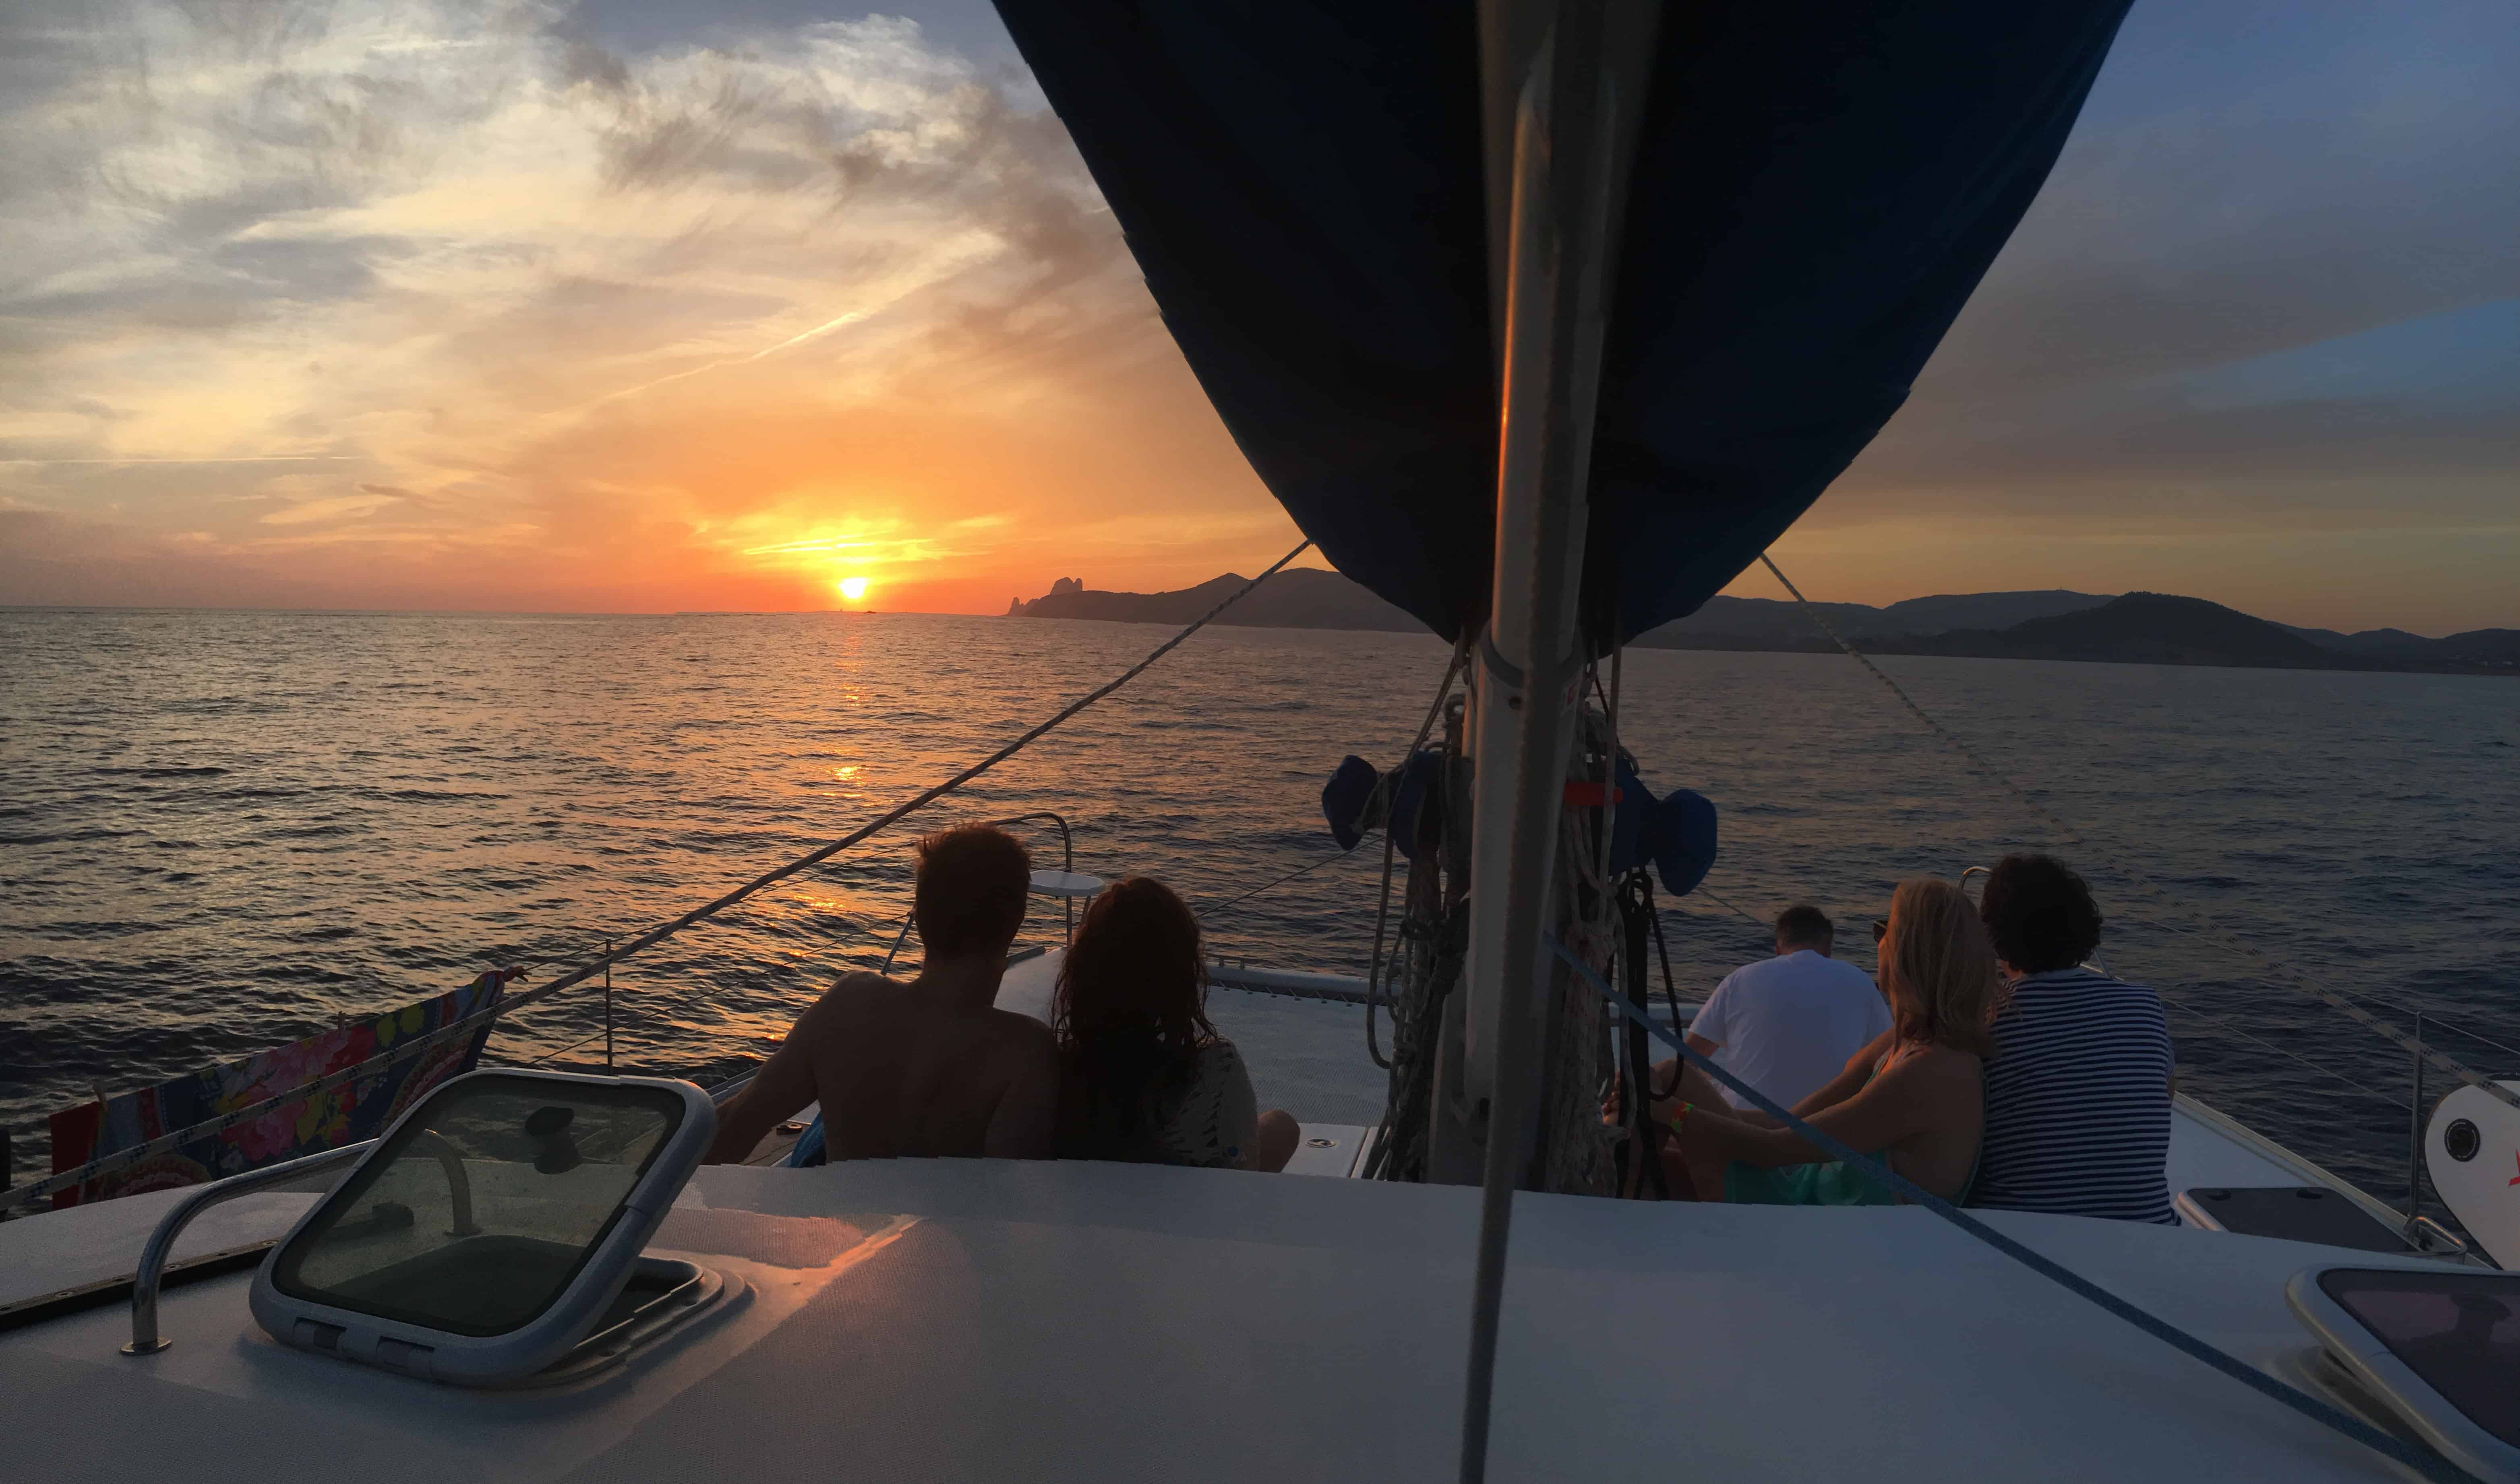 familia en catamarán disfrutando de la puesta de sol mientras se navega a Ibiza desde Formentera